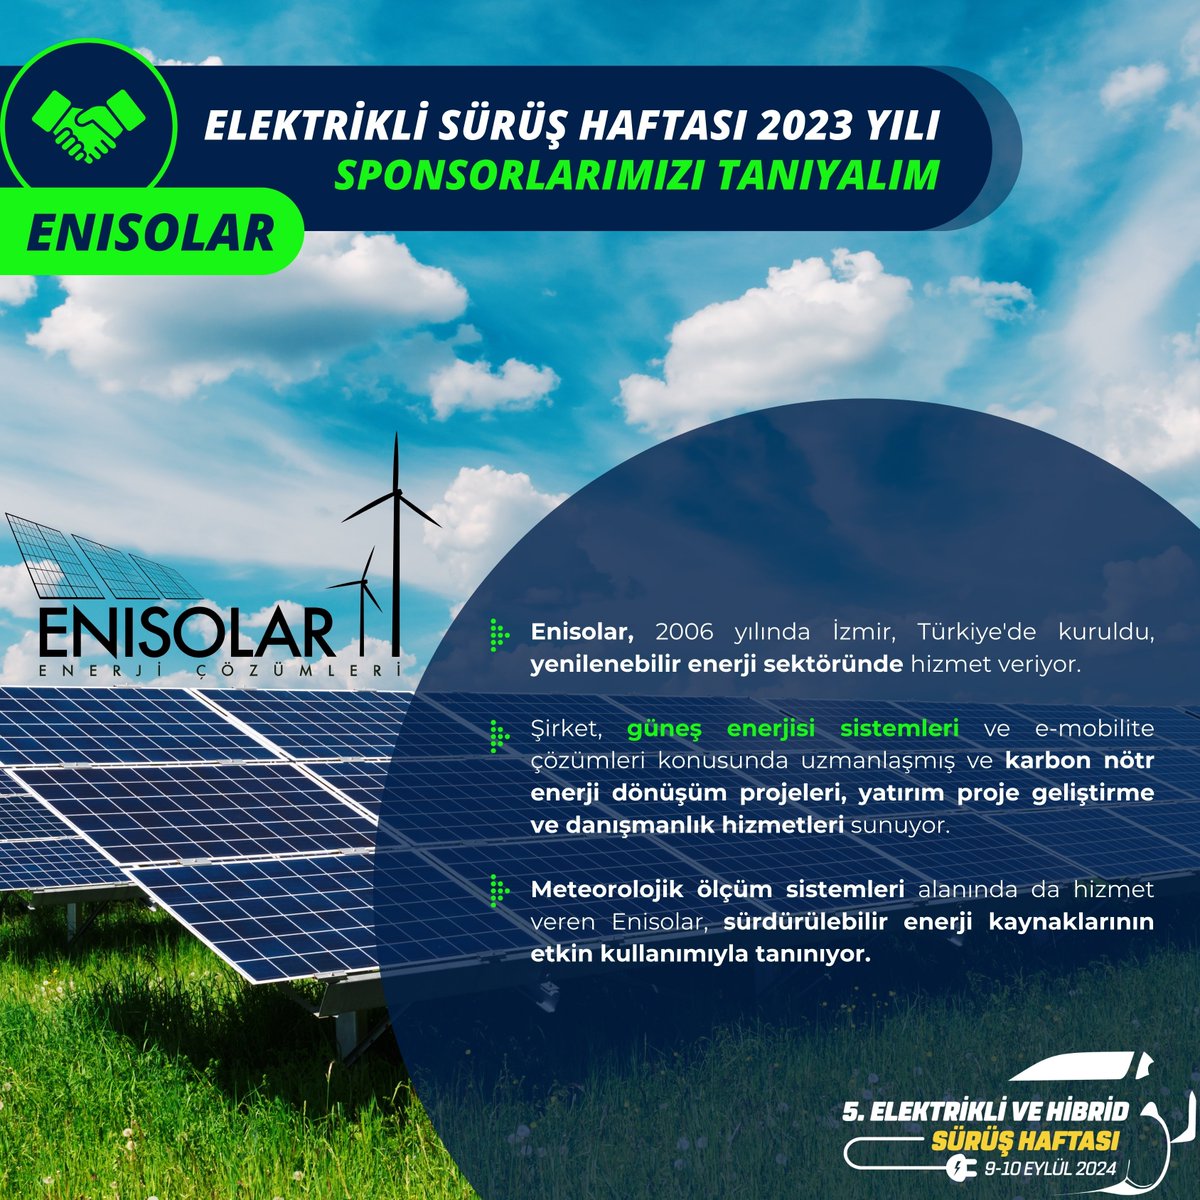 ⚡Enisolar, güneş enerjisi sistemleri ve e-mobilite çözümleri konusunda uzmanlaşmış ve karbon nötr enerji dönüşüm projeleri, yatırım proje geliştirme ve danışmanlık hizmetleri sunuyor. @ehcars #elektriklisürüşhaftası #elektrikliaraba #electriccars #hybrid @enisolar